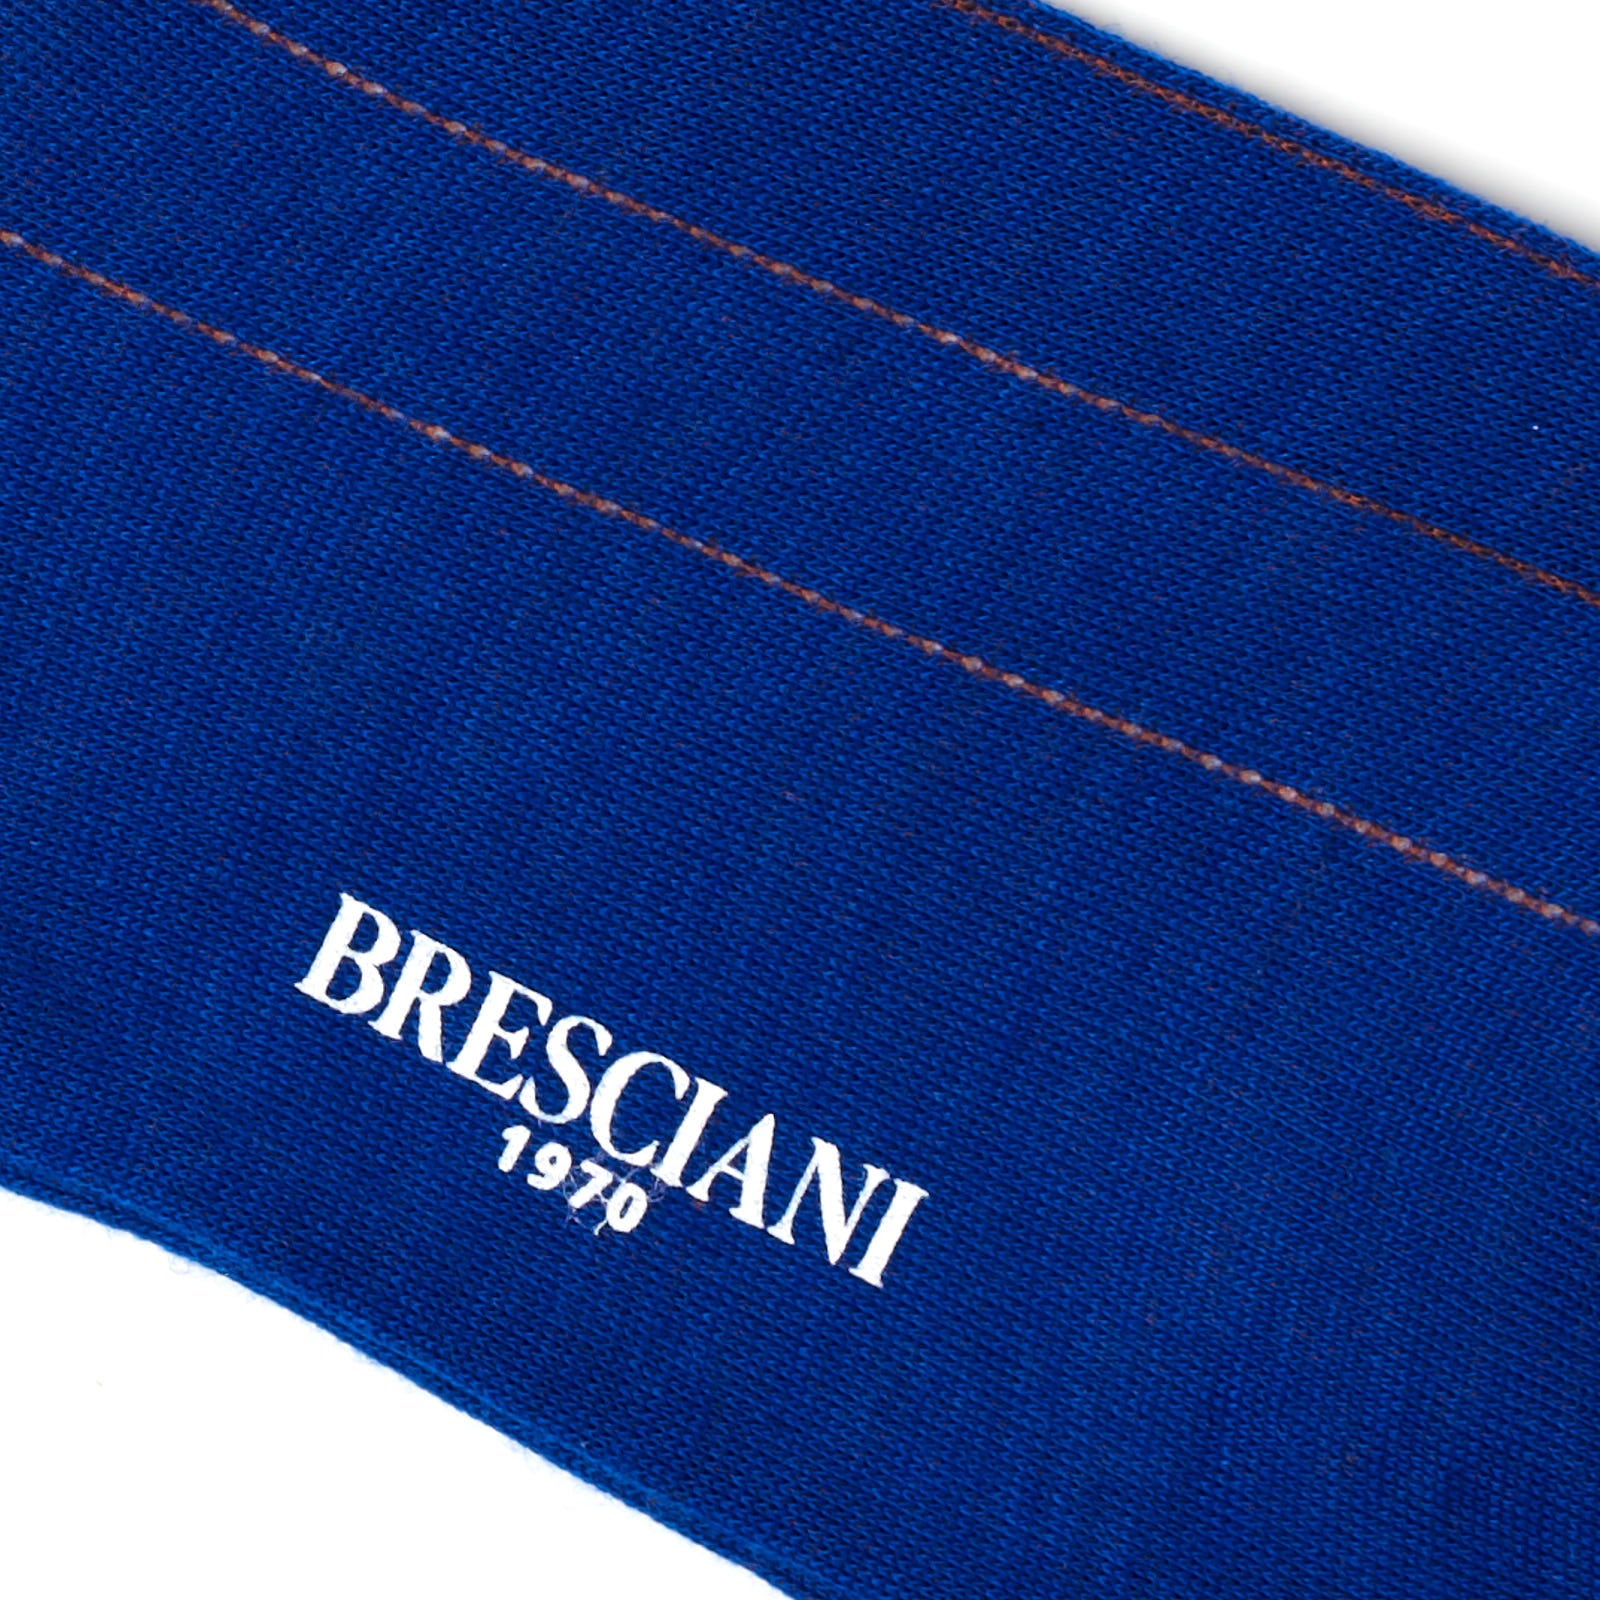 BRESCIANI Wool Pencil Striped Mid Calf Length Socks M-L